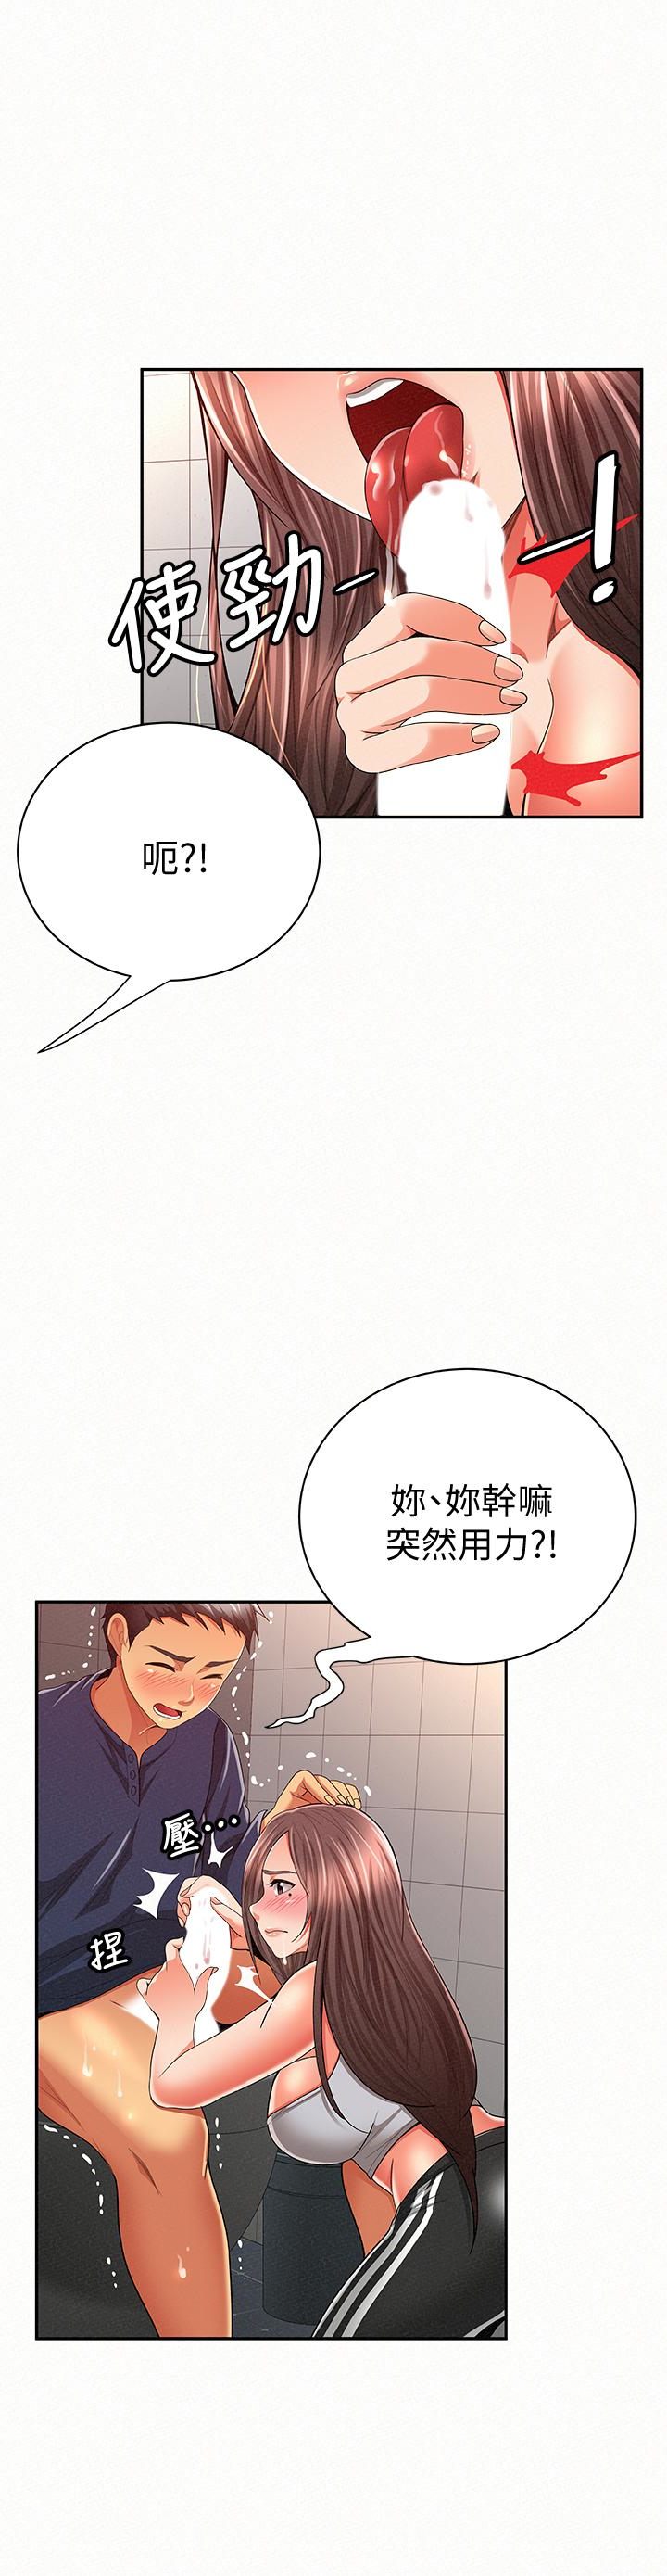 韩国污漫画 報告夫人 第41话-仁华吸力强劲的小穴 9